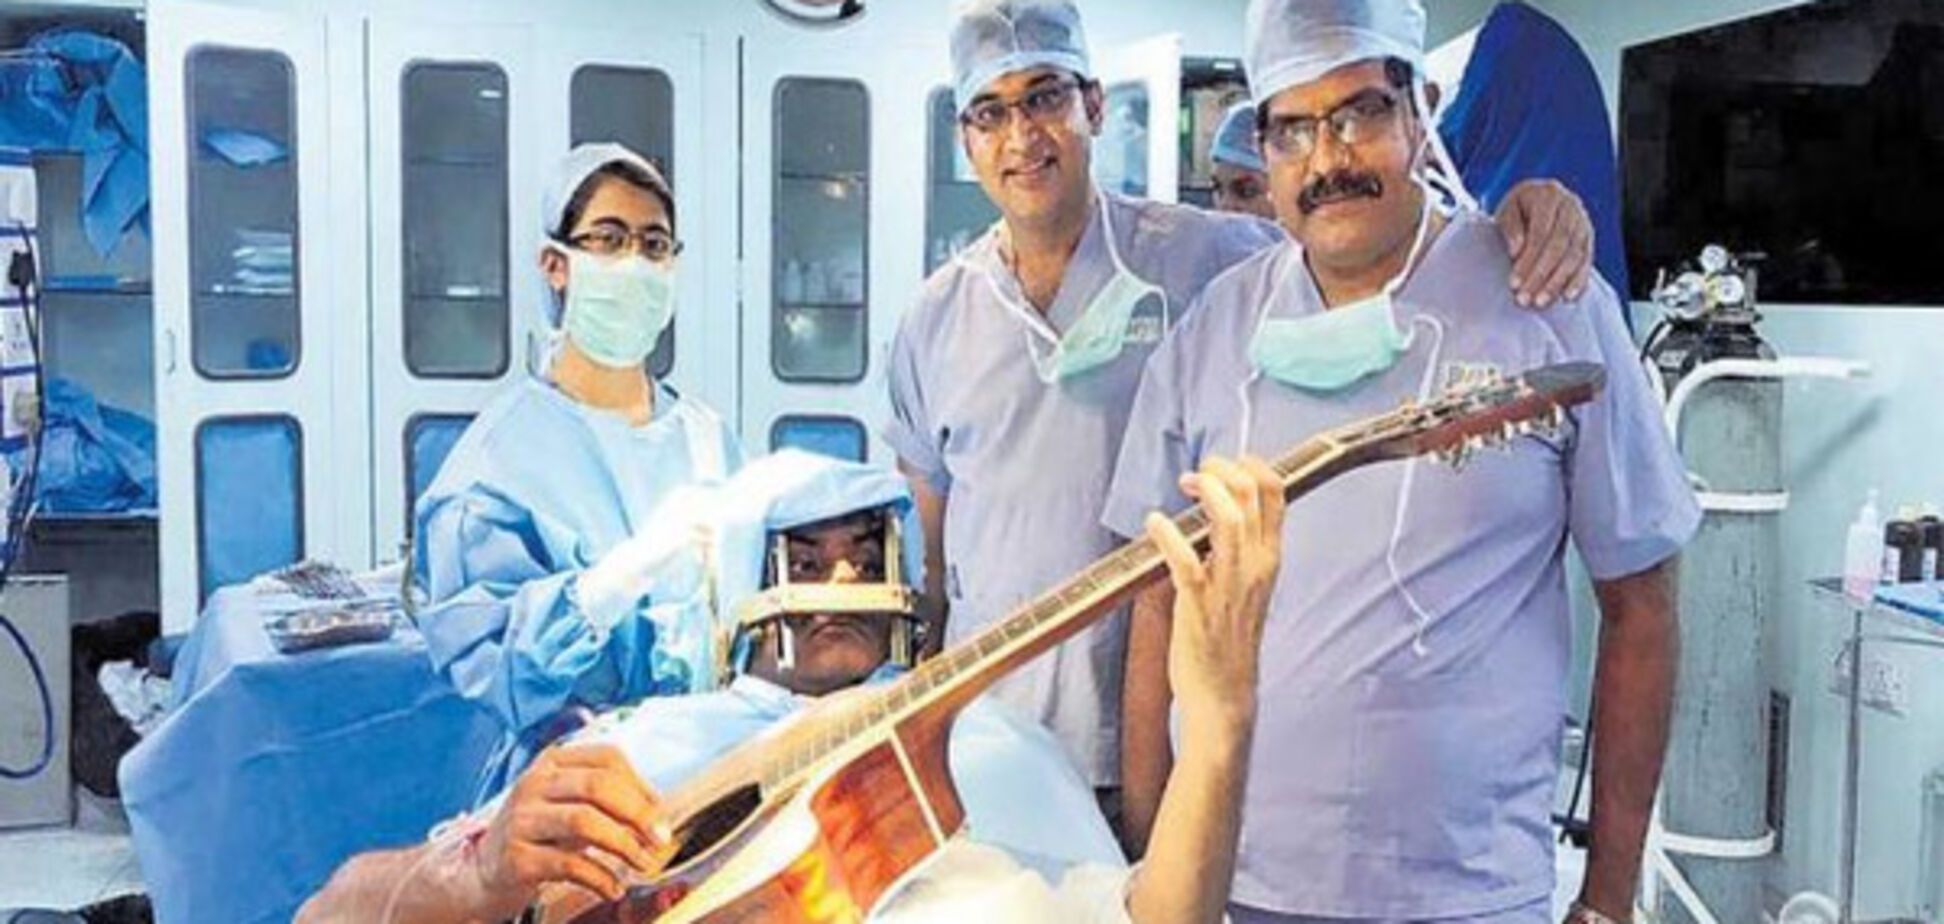 Індійський музикант сім годин грав на гітарі, поки йому оперували мозок